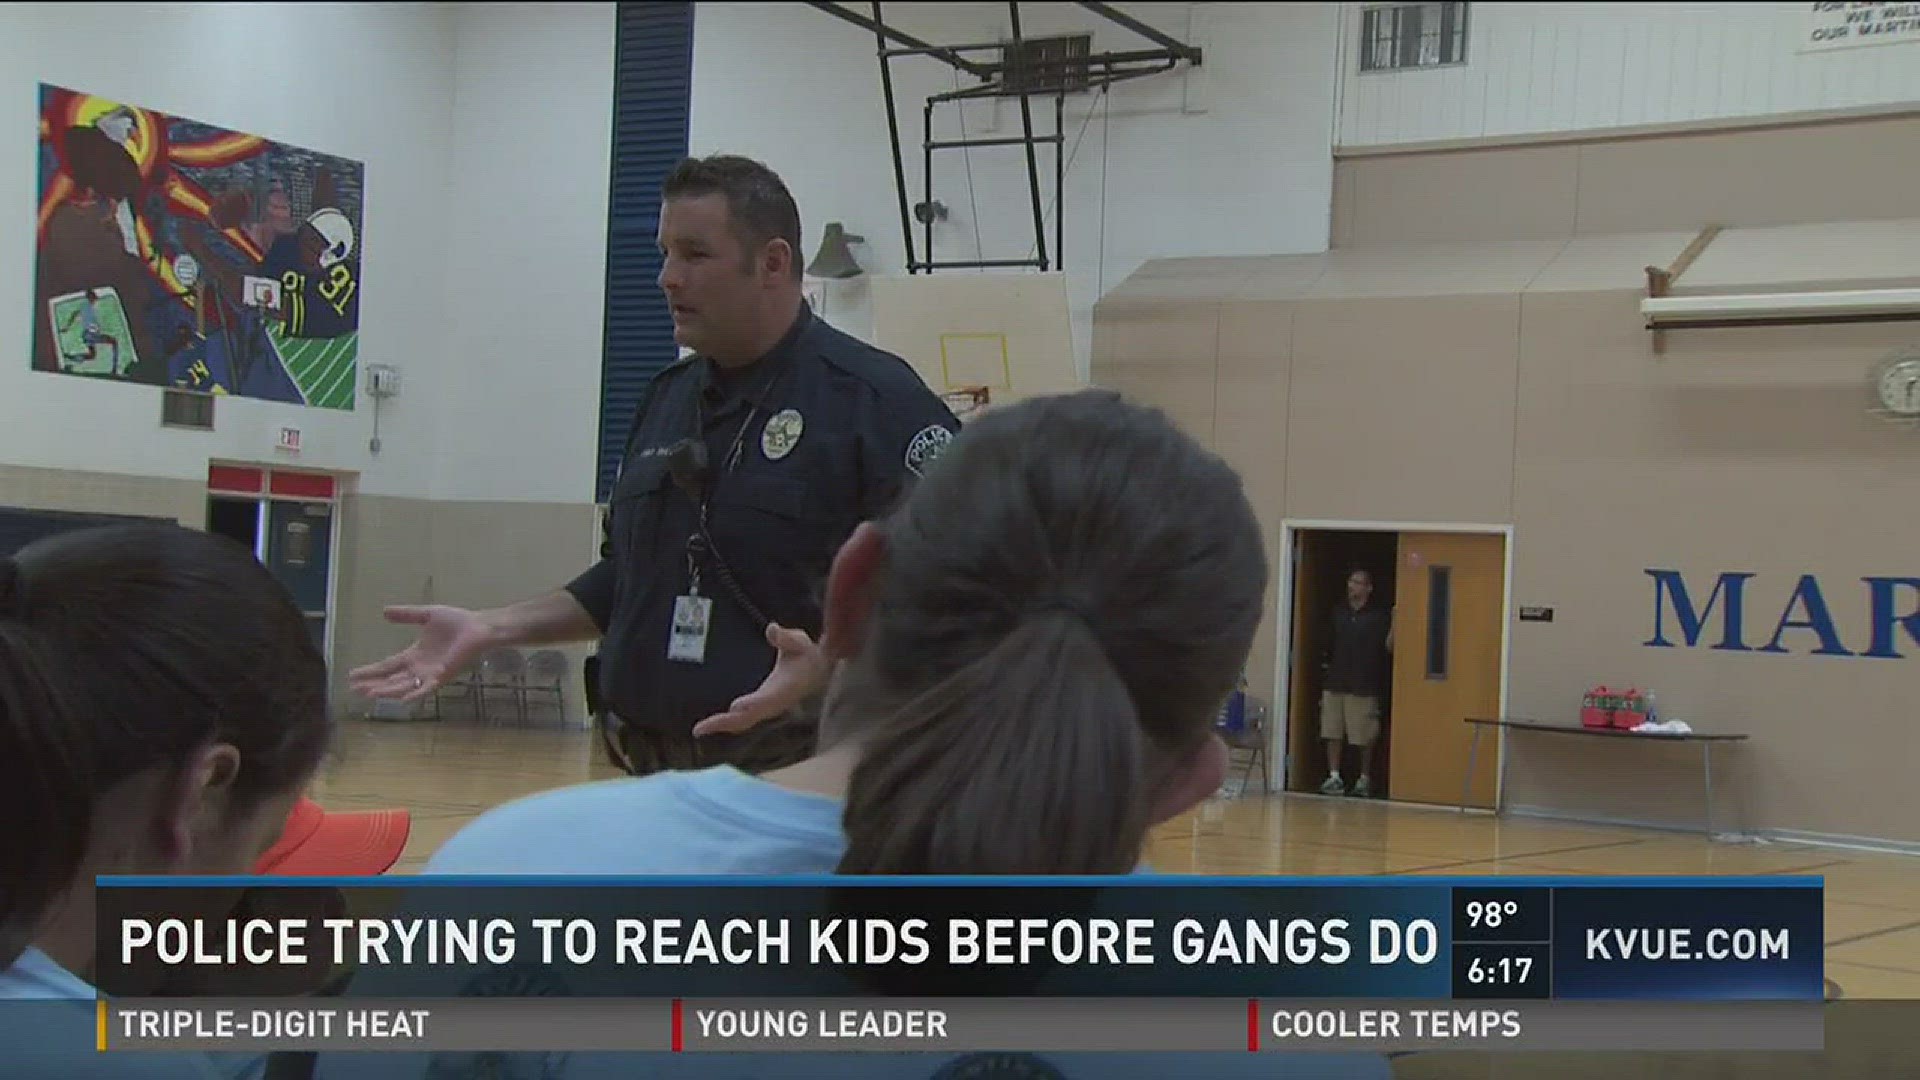 Police work to reach kids before gangs